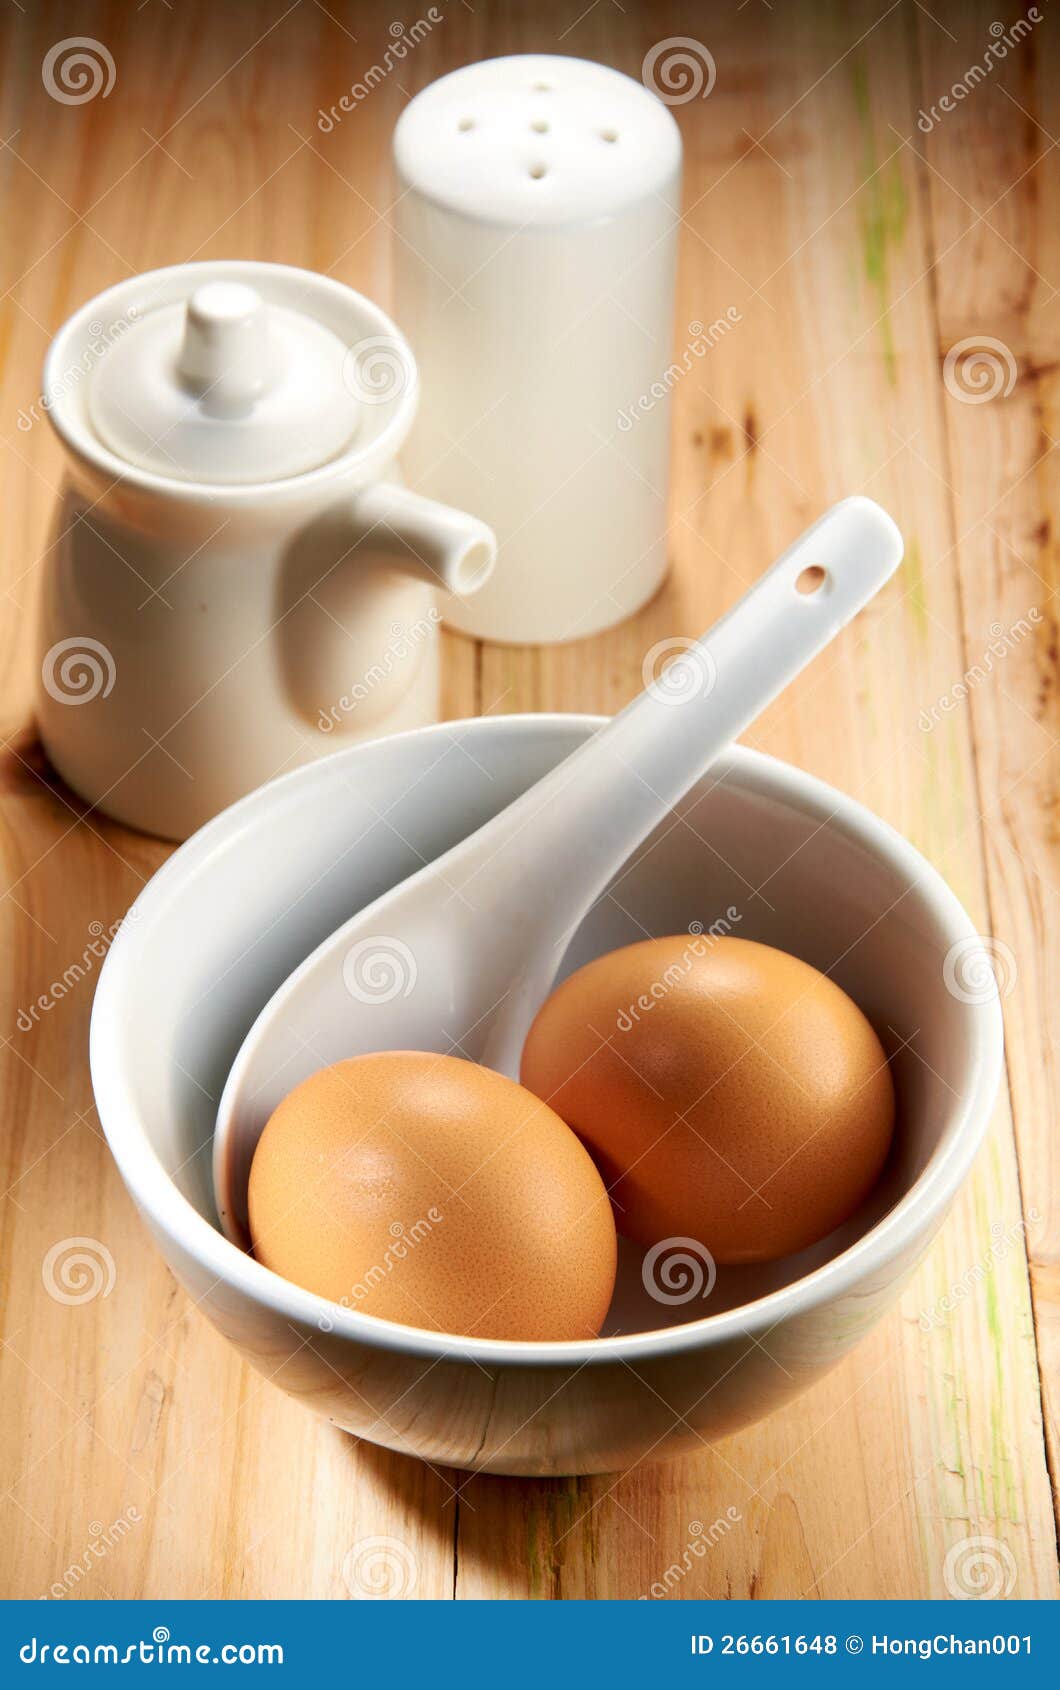 Śniadanie set. Wyśmienicie śniadania ustaleni jajka na drewnianym stole.